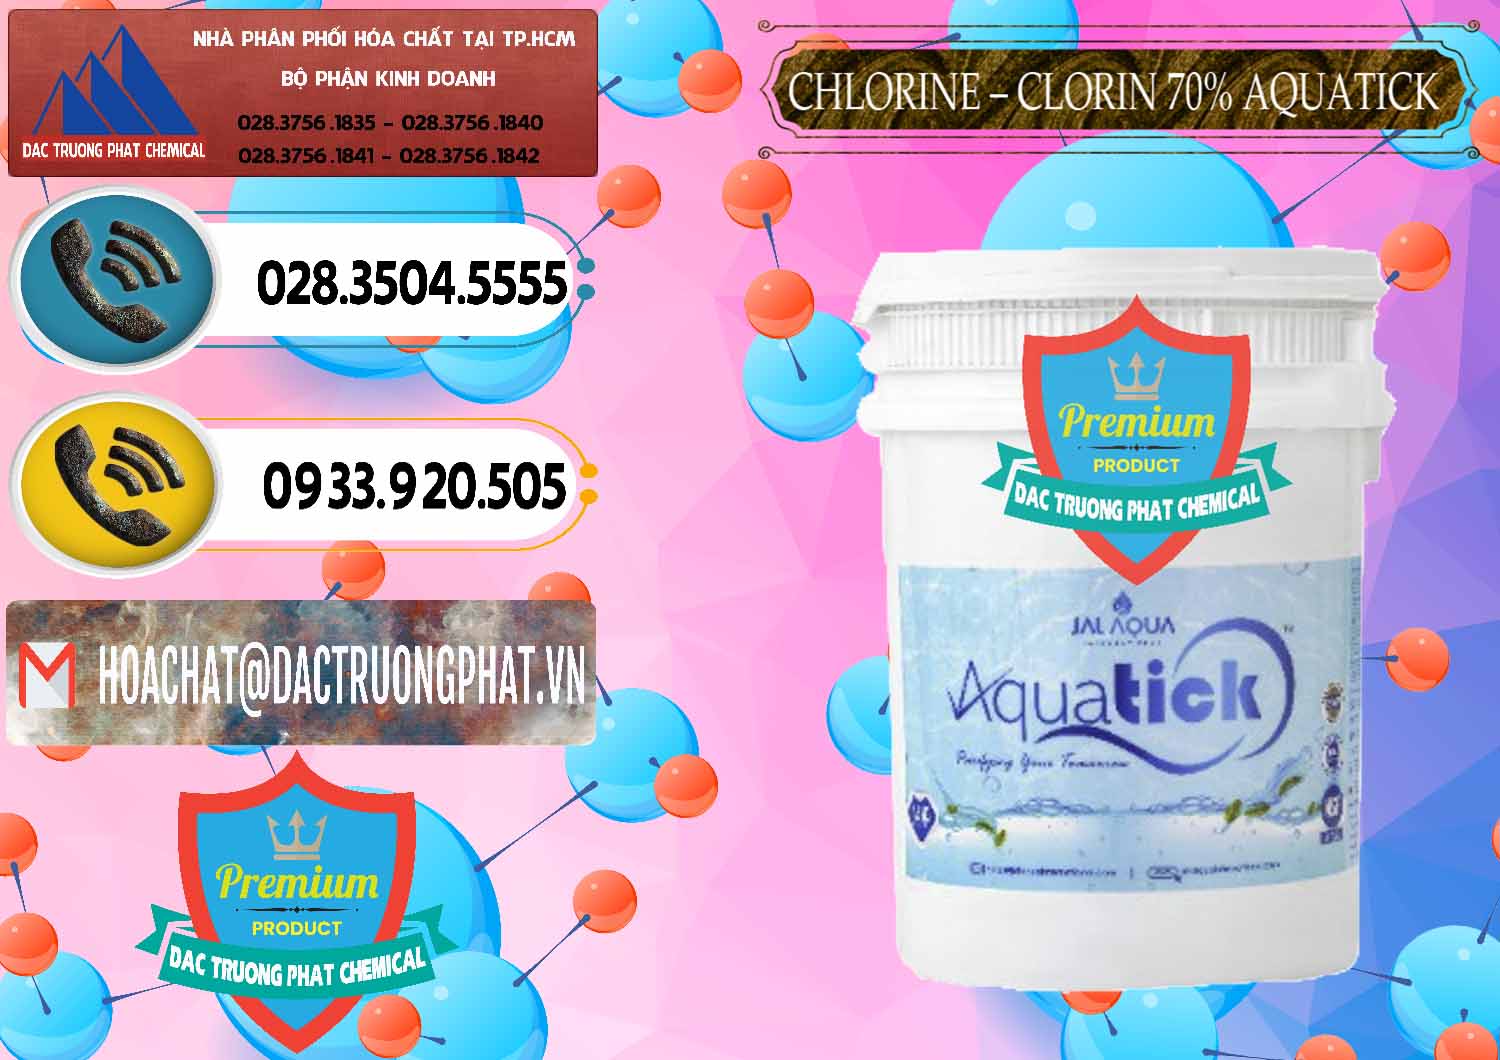 Nơi bán - cung ứng Chlorine – Clorin 70% Aquatick Thùng Cao Jal Aqua Ấn Độ India - 0237 - Chuyên cung ứng & phân phối hóa chất tại TP.HCM - hoachatdetnhuom.vn